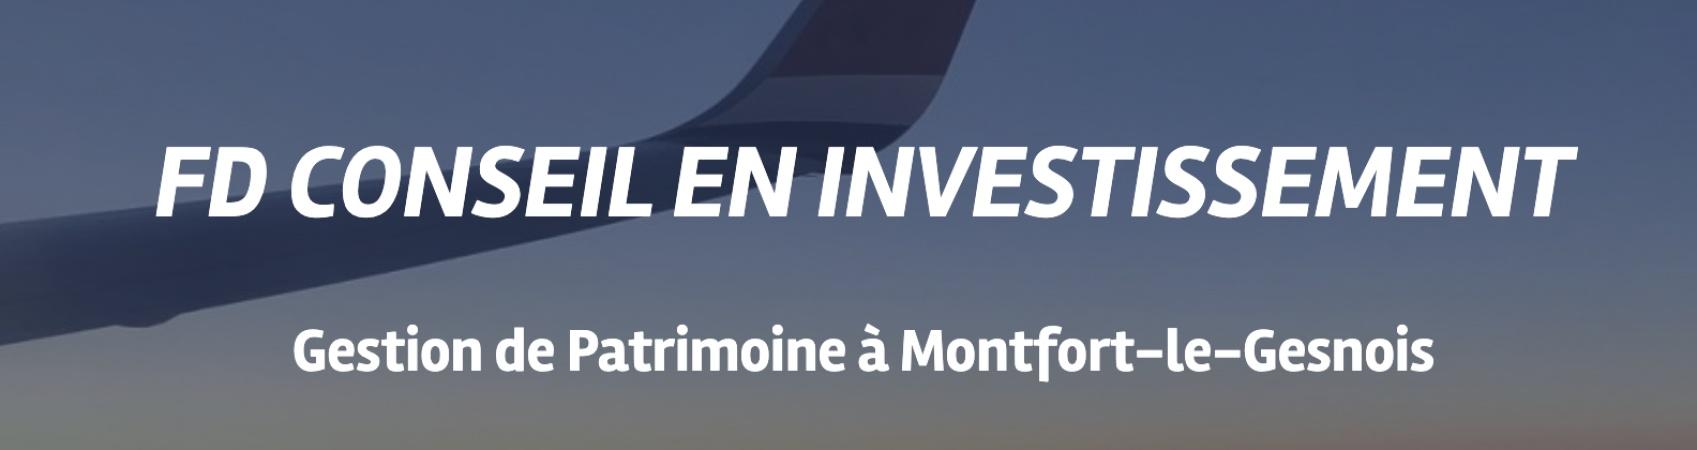 Fd Conseil En Investissement Montfort Le Gesnois